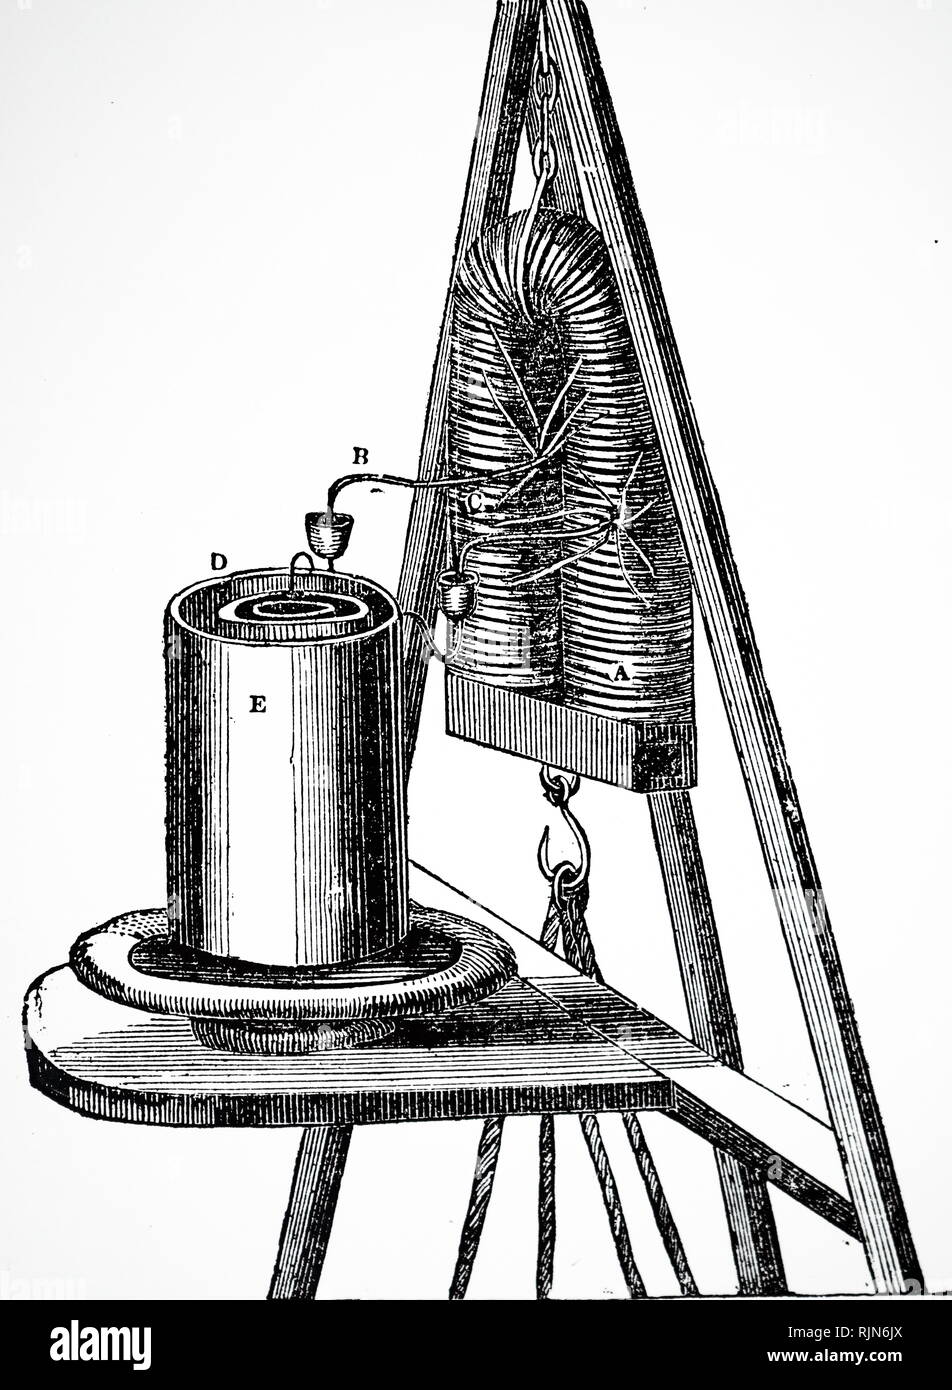 Ilustración que muestra el electroimán, lo suficientemente potente como para levantar unos 220 kg. Una herradura de hierro blando está enrollado con hilo cobre cubiertas de seda y alimentado por una